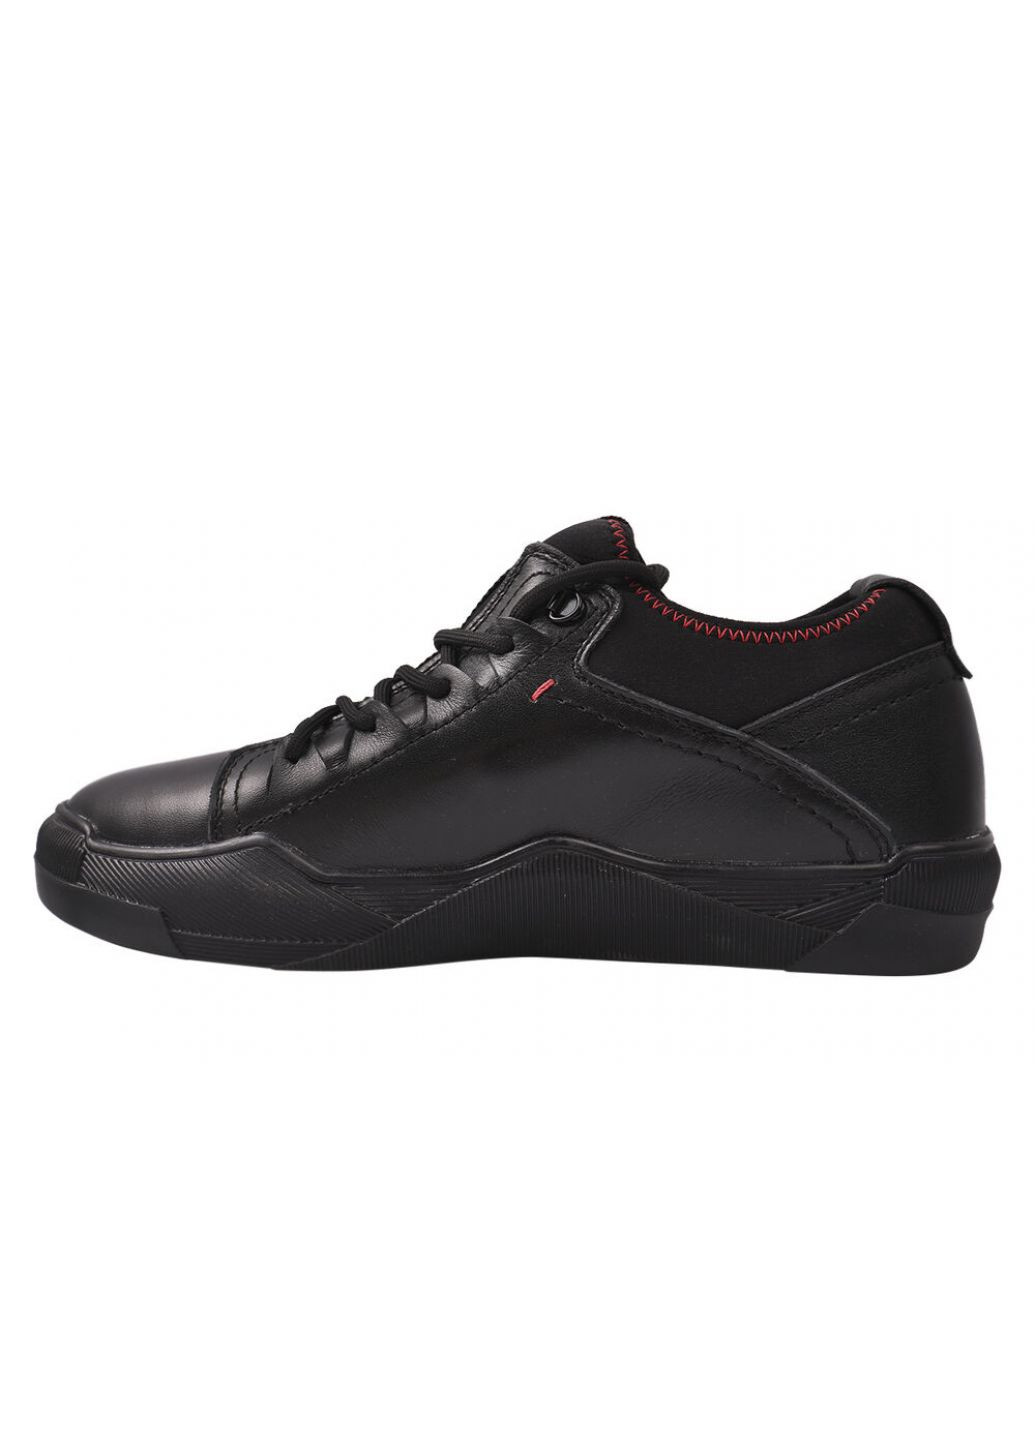 Черные ботинки мужские из натуральной кожи, высокие, на низком ходу, черные, на шнуровке, украина Konors 493-21ZTC